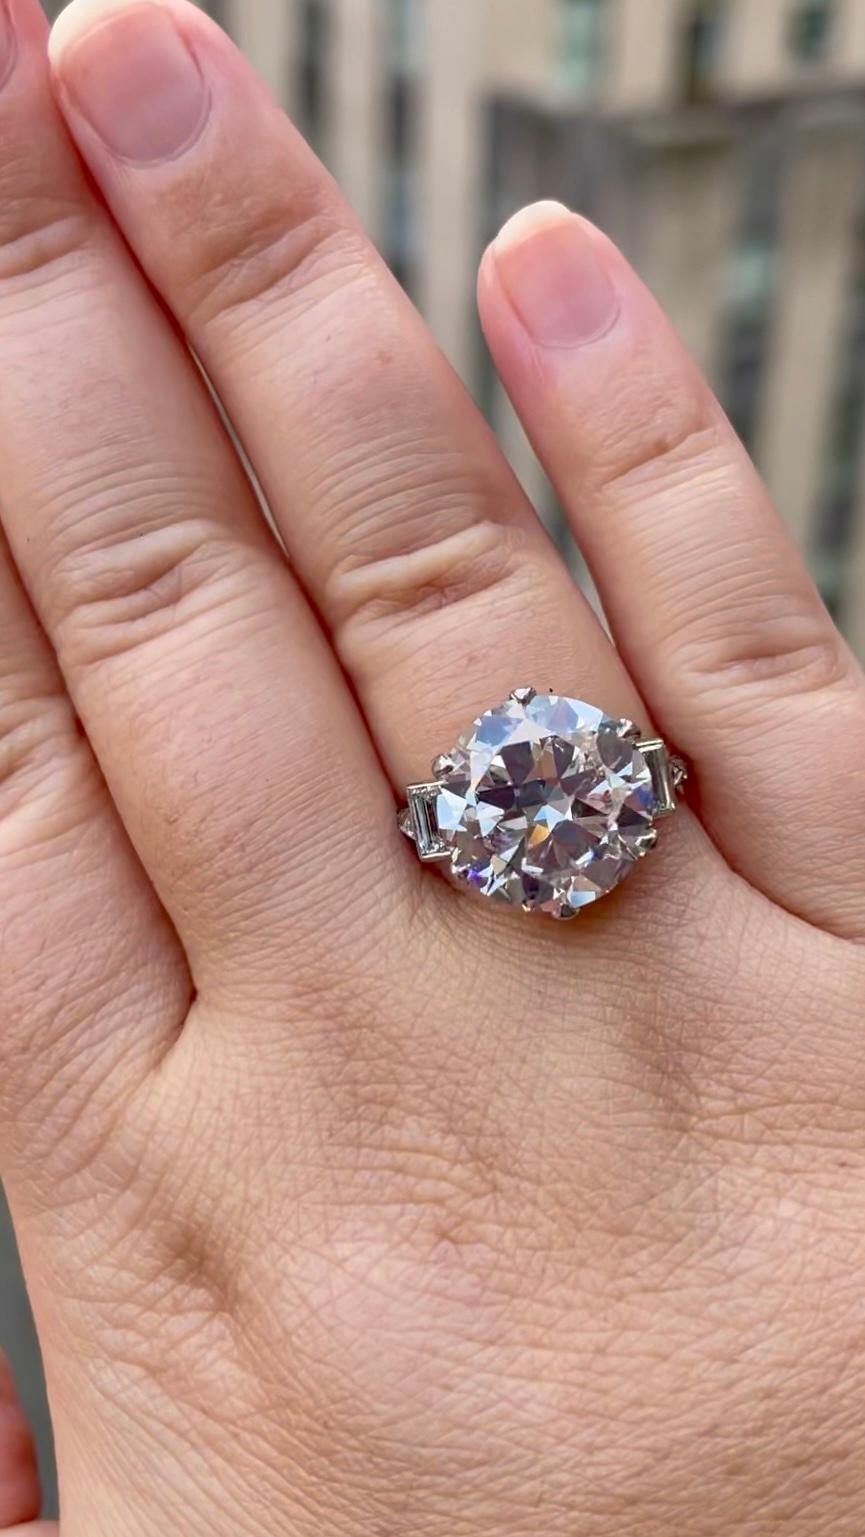 Dieser schöne antike Diamant mit 7,15 Karat im europäischen Schliff ist ein seltenes und schönes Stück. Von GIA als K Farbe und VVS2 Klarheit eingestuft, ist dieser Diamant hell, lebendig und brillant. Die größeren Facetten, die für einen antik